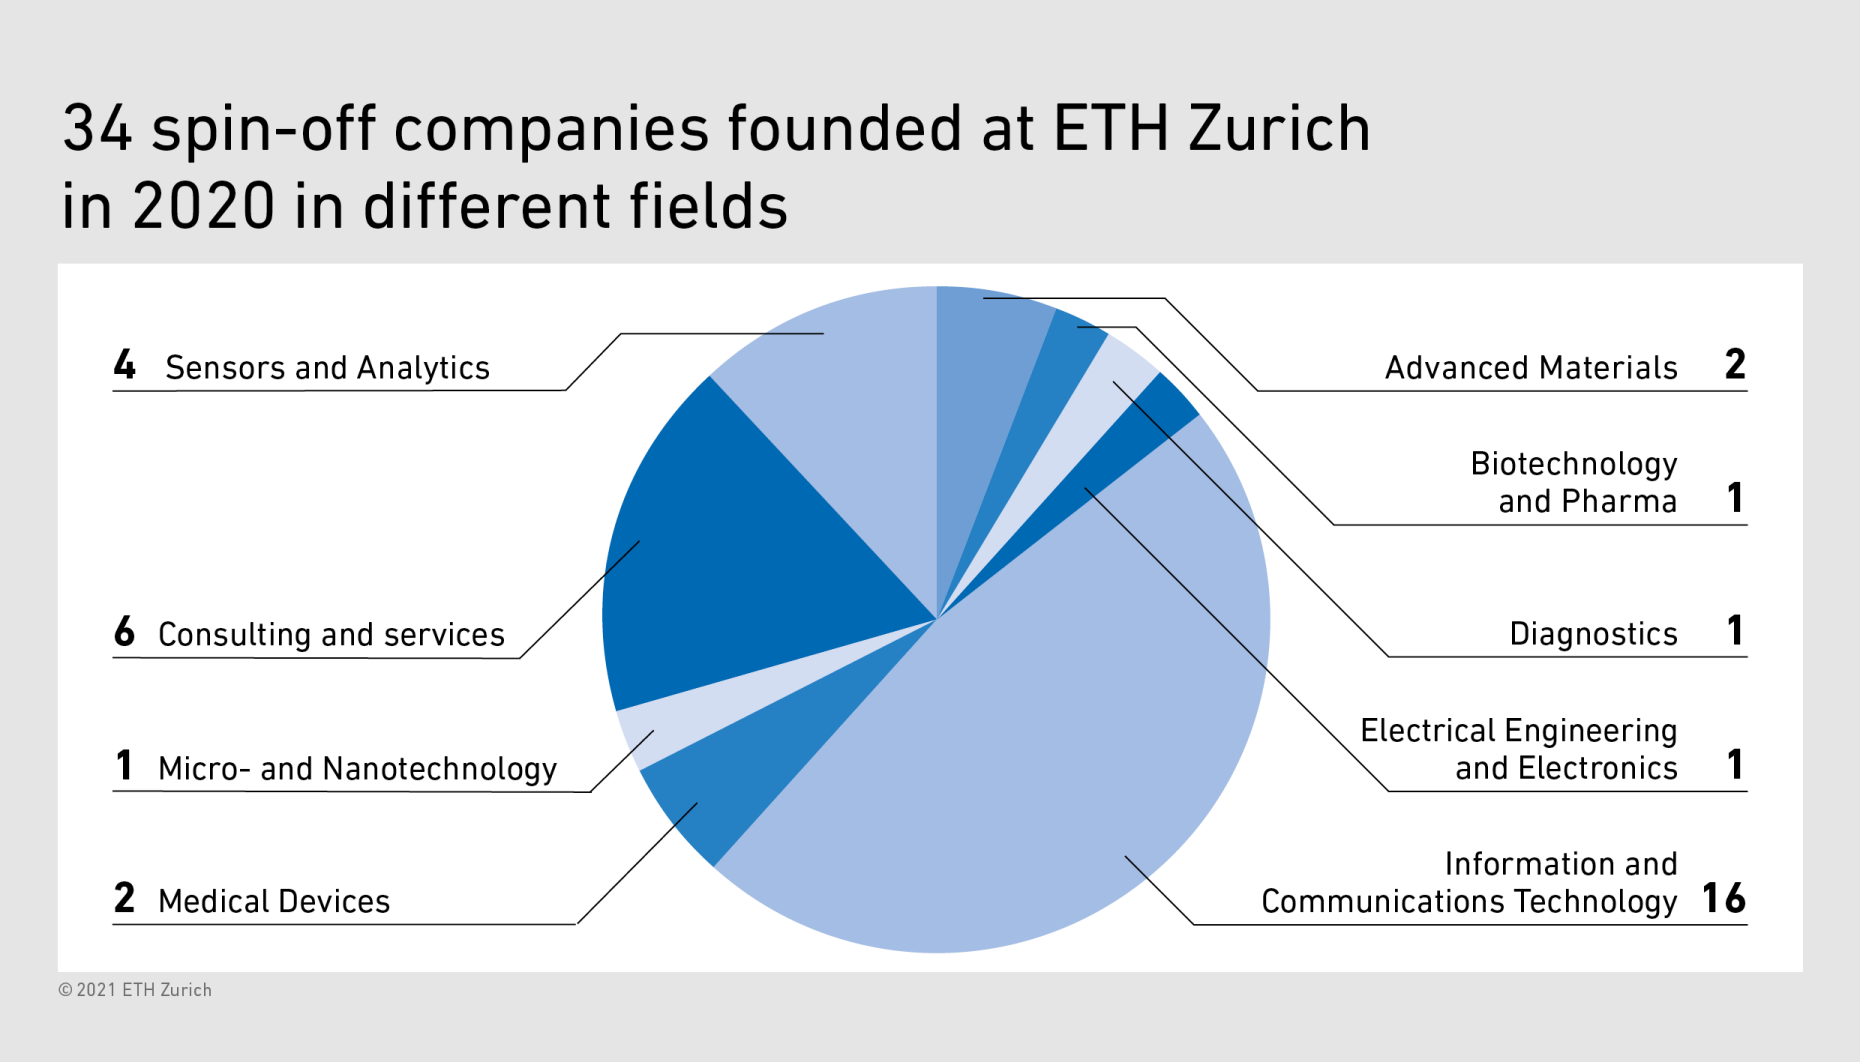 Diagram about ETH Zurich spin-offs in different fields